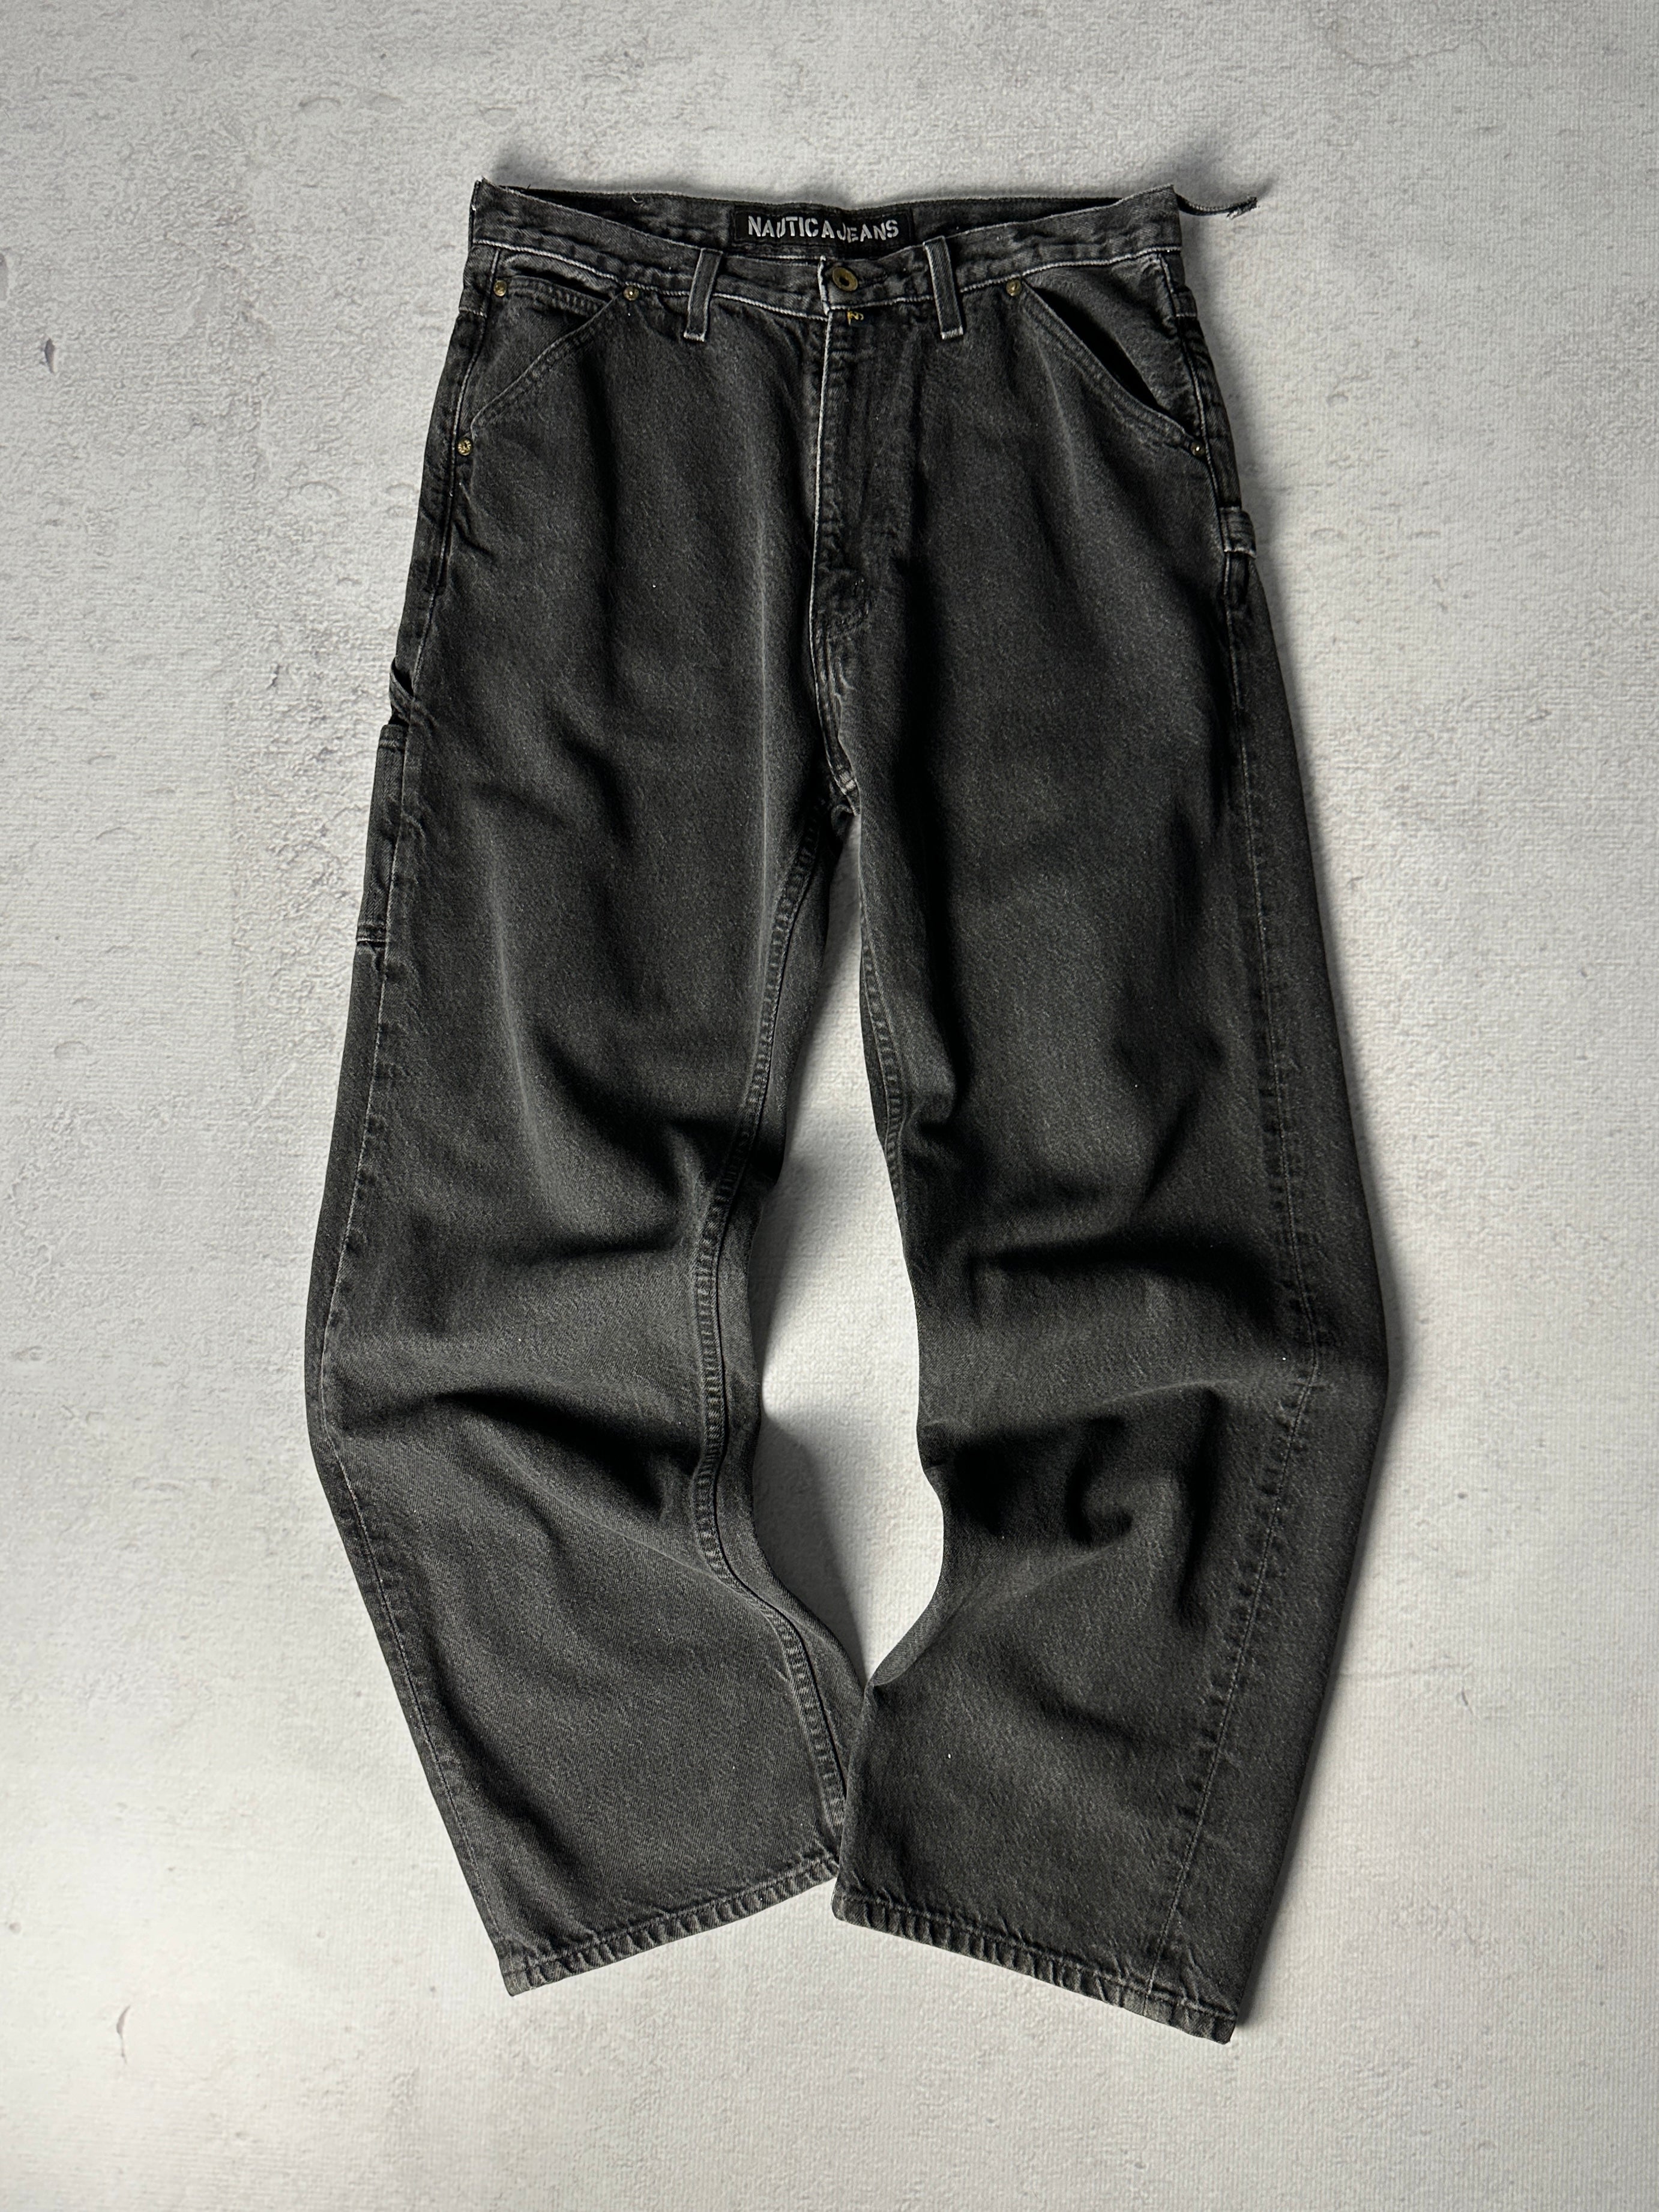 Vintage Nautica Carpenter Jeans - Men's 34W32L